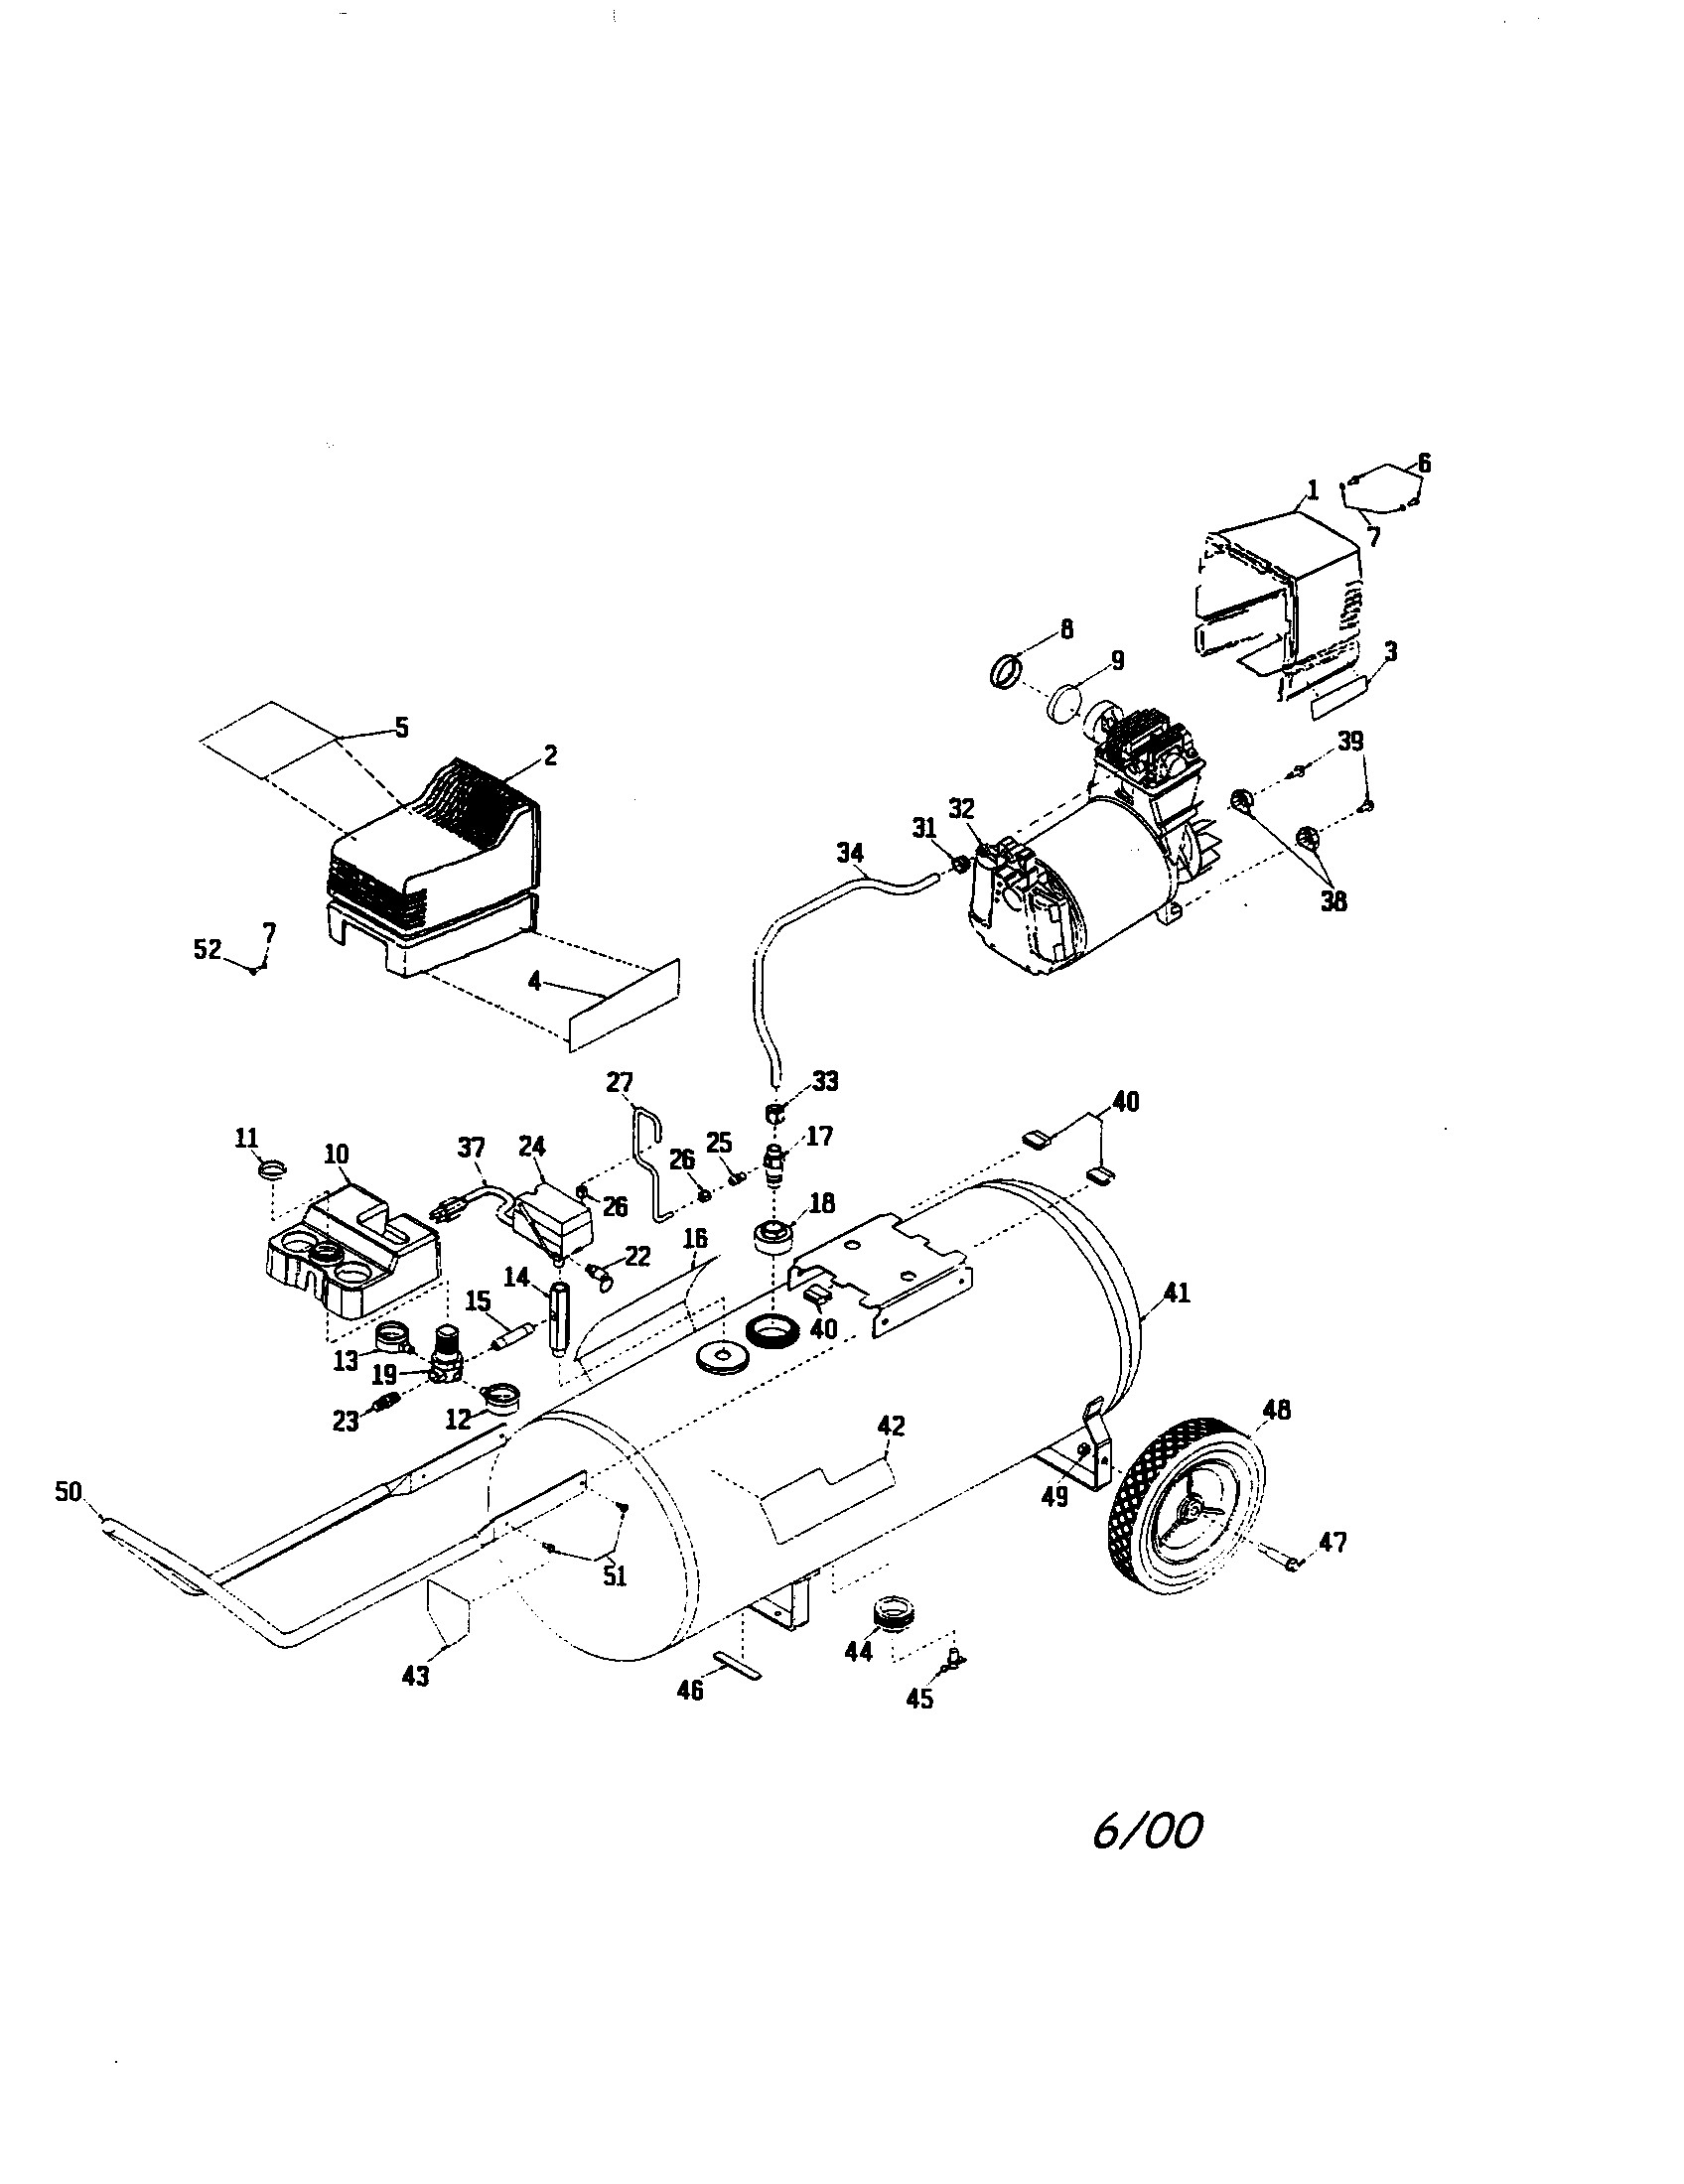 Air Compressor Parts Diagram Sears Craftsman 919 Air Pressor Parts Of Air Compressor Parts Diagram